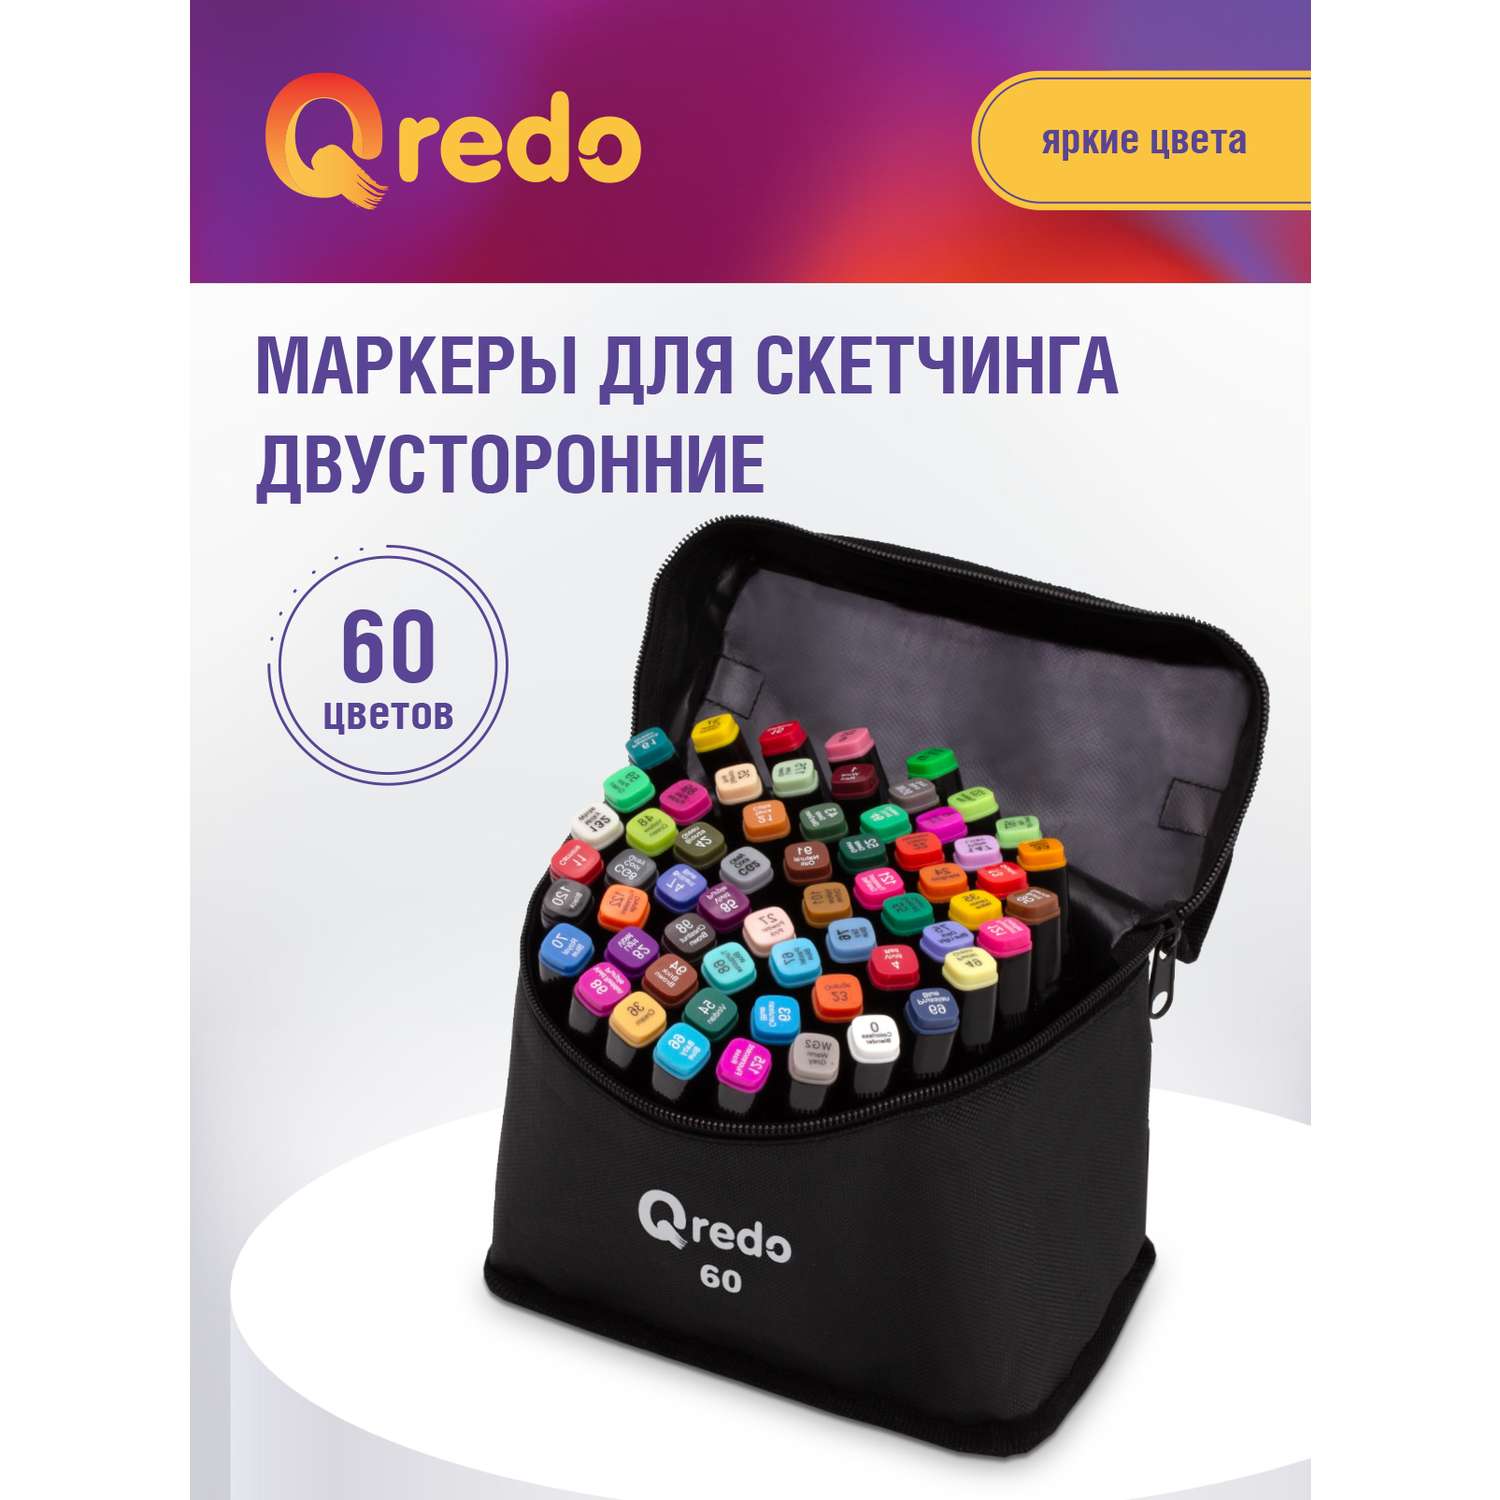 Маркеры для скетчинга Qredo двусторонние BLACK набор 60 шт текстильная сумка - фото 1